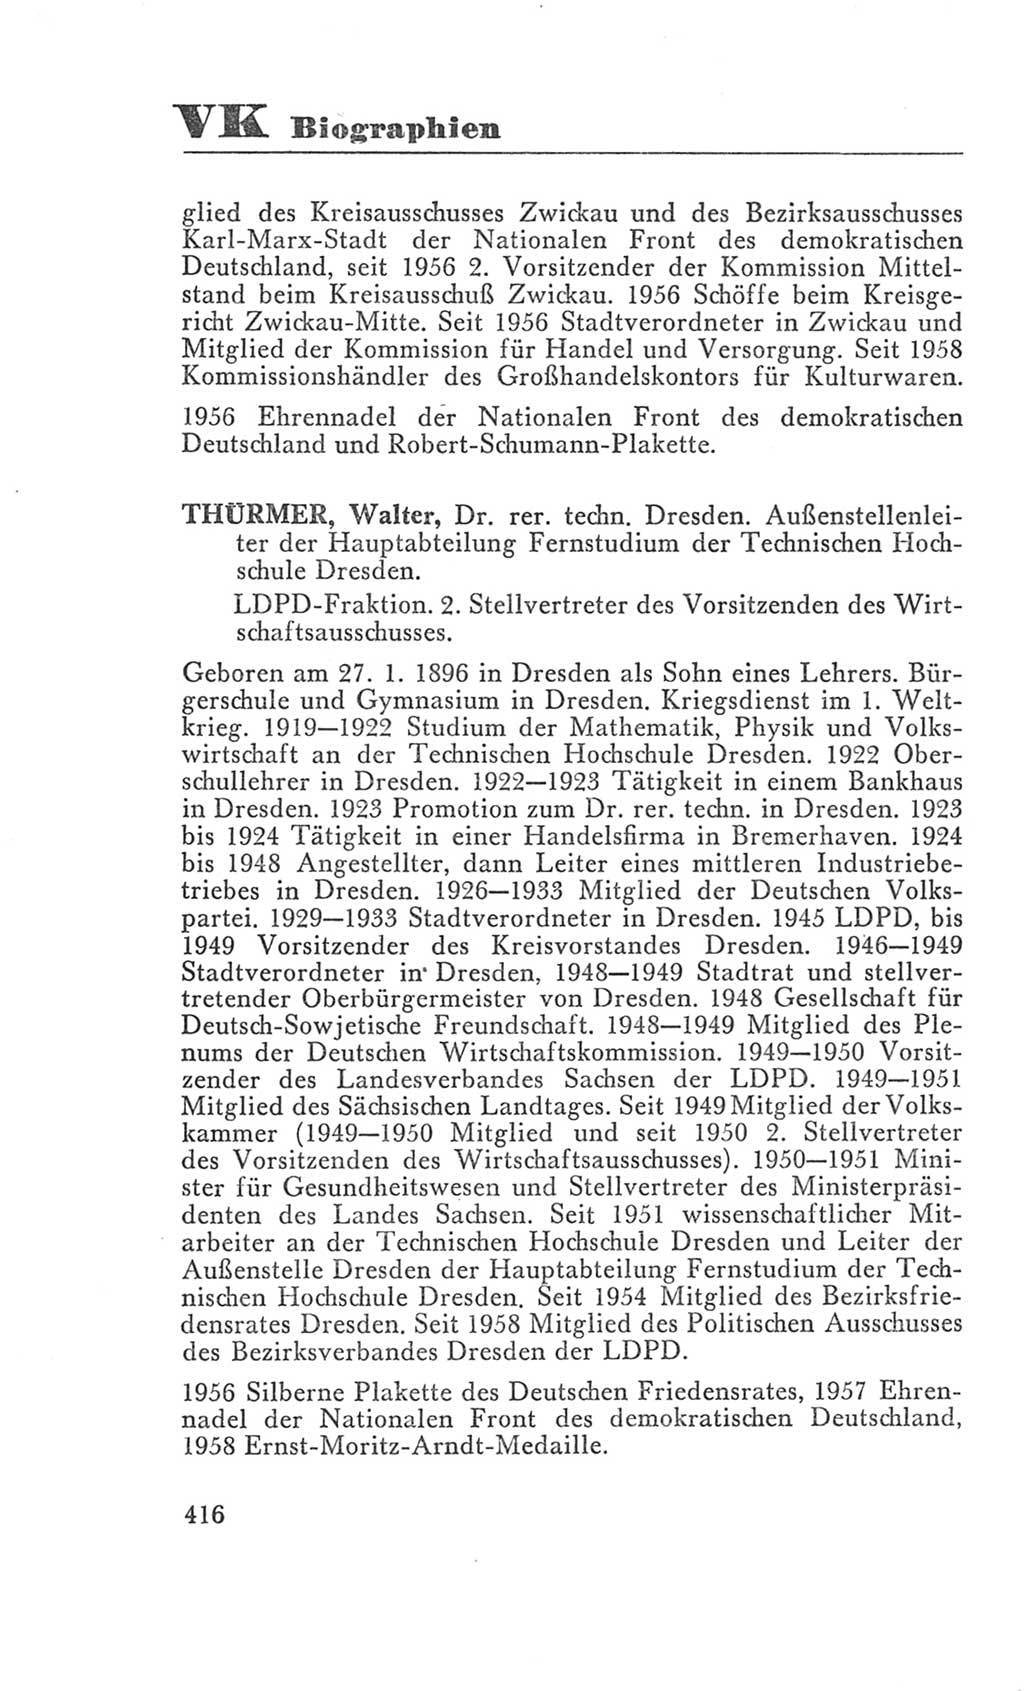 Handbuch der Volkskammer (VK) der Deutschen Demokratischen Republik (DDR), 3. Wahlperiode 1958-1963, Seite 416 (Hdb. VK. DDR 3. WP. 1958-1963, S. 416)